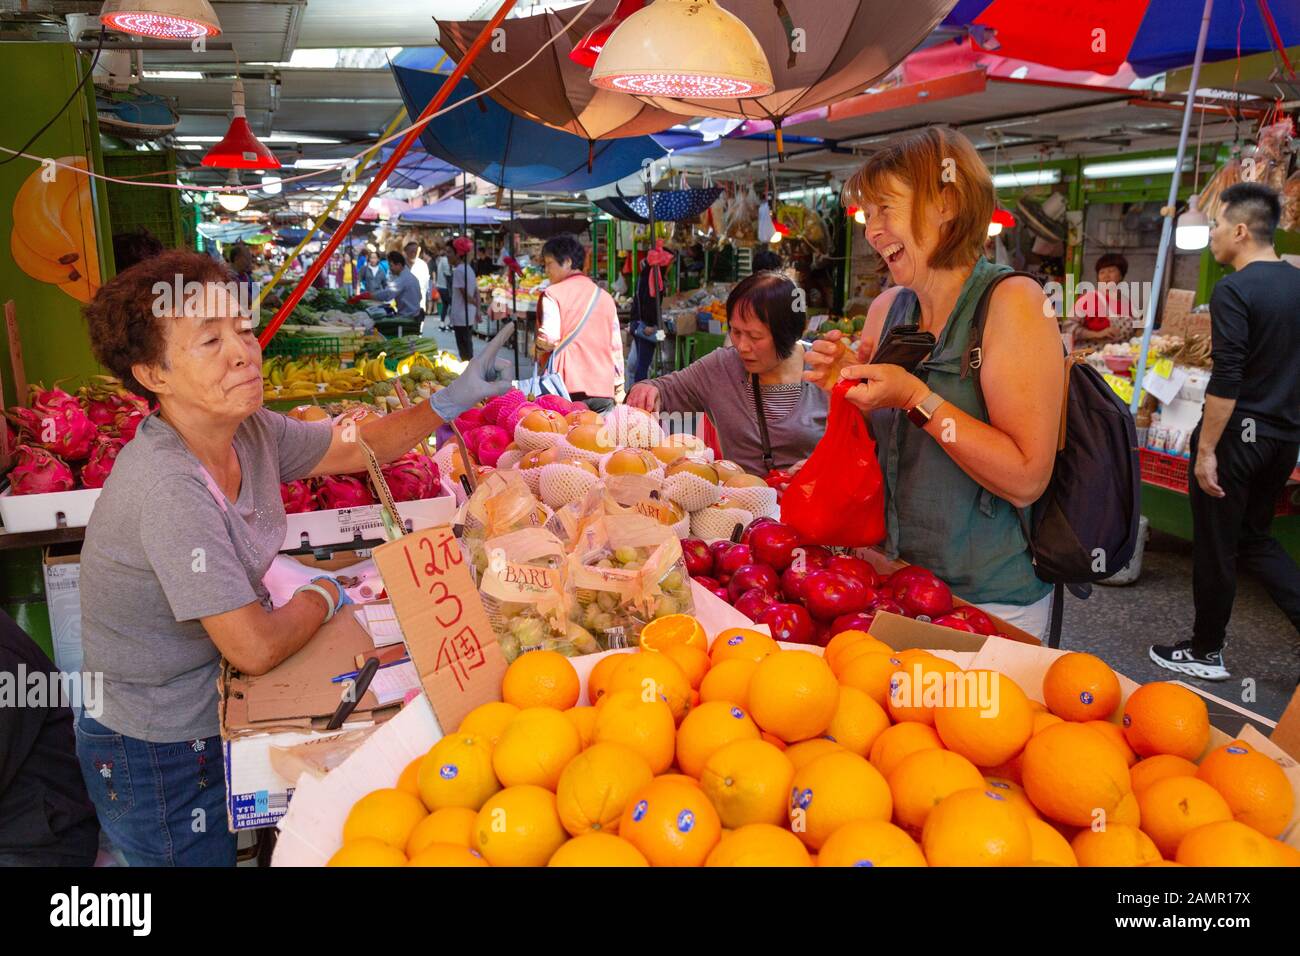 Hong Kong touriste - une femme touristique achetant des fruits d'un marché, Bowring Street Market, Kowloon Hong Kong Asie - exemple de voyage à Hong Kong Banque D'Images